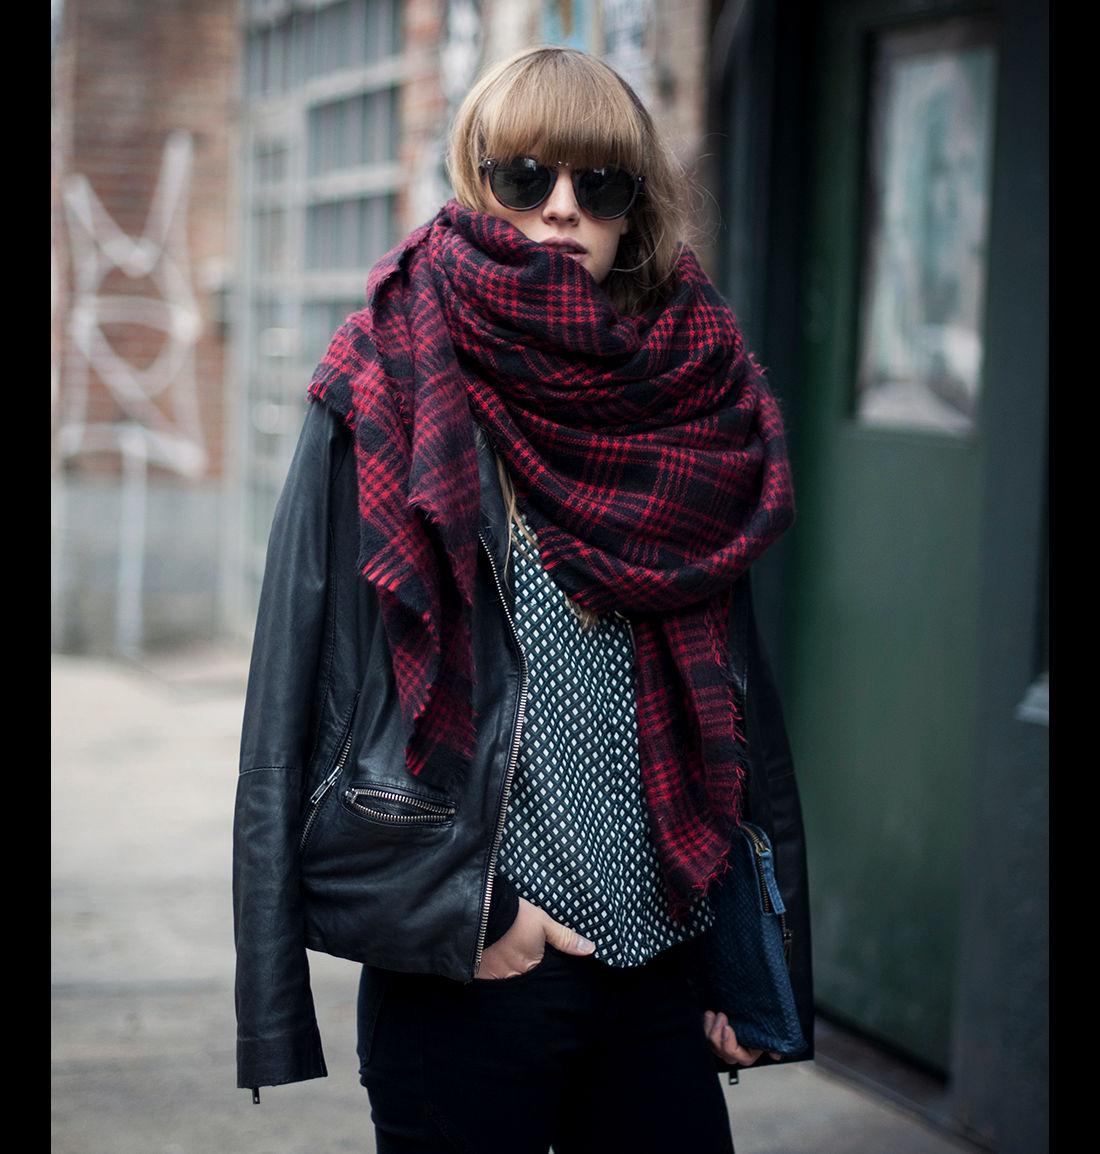 Шарф. Объемный шарф. Фотосессия с шарфом. Девушка в большом шарфе.